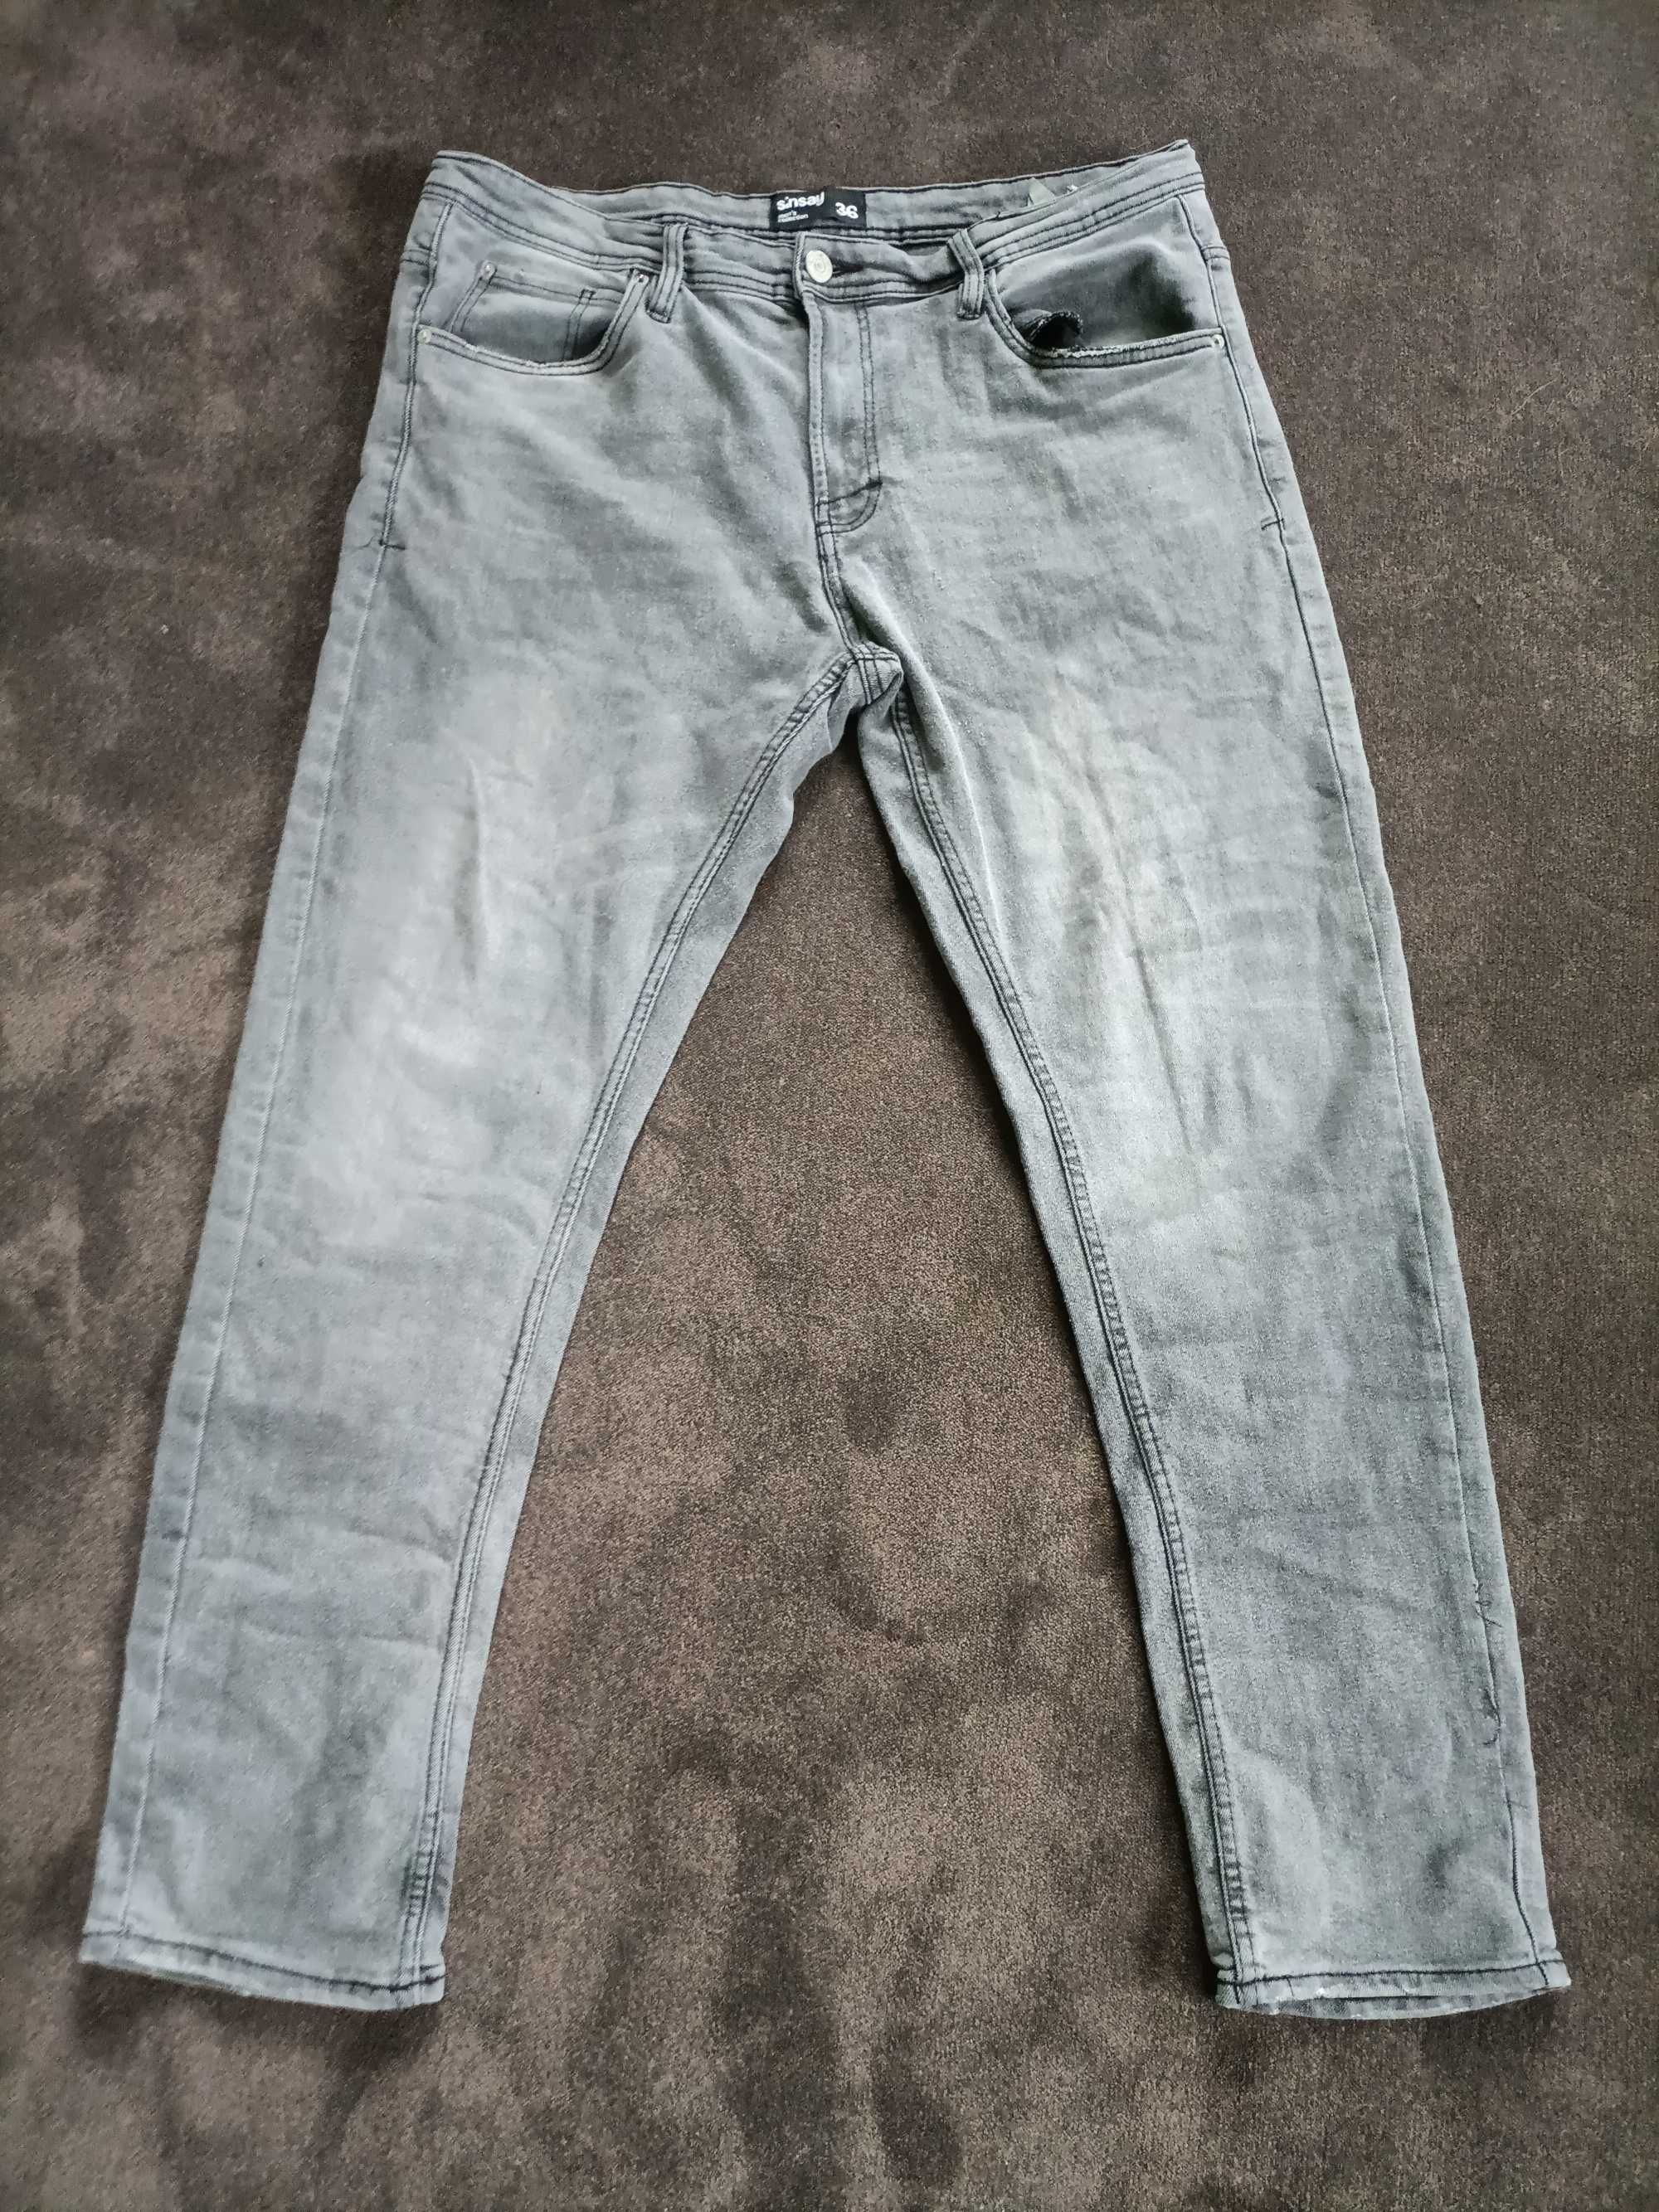 Spodnie dżinsy męskie szare xxl